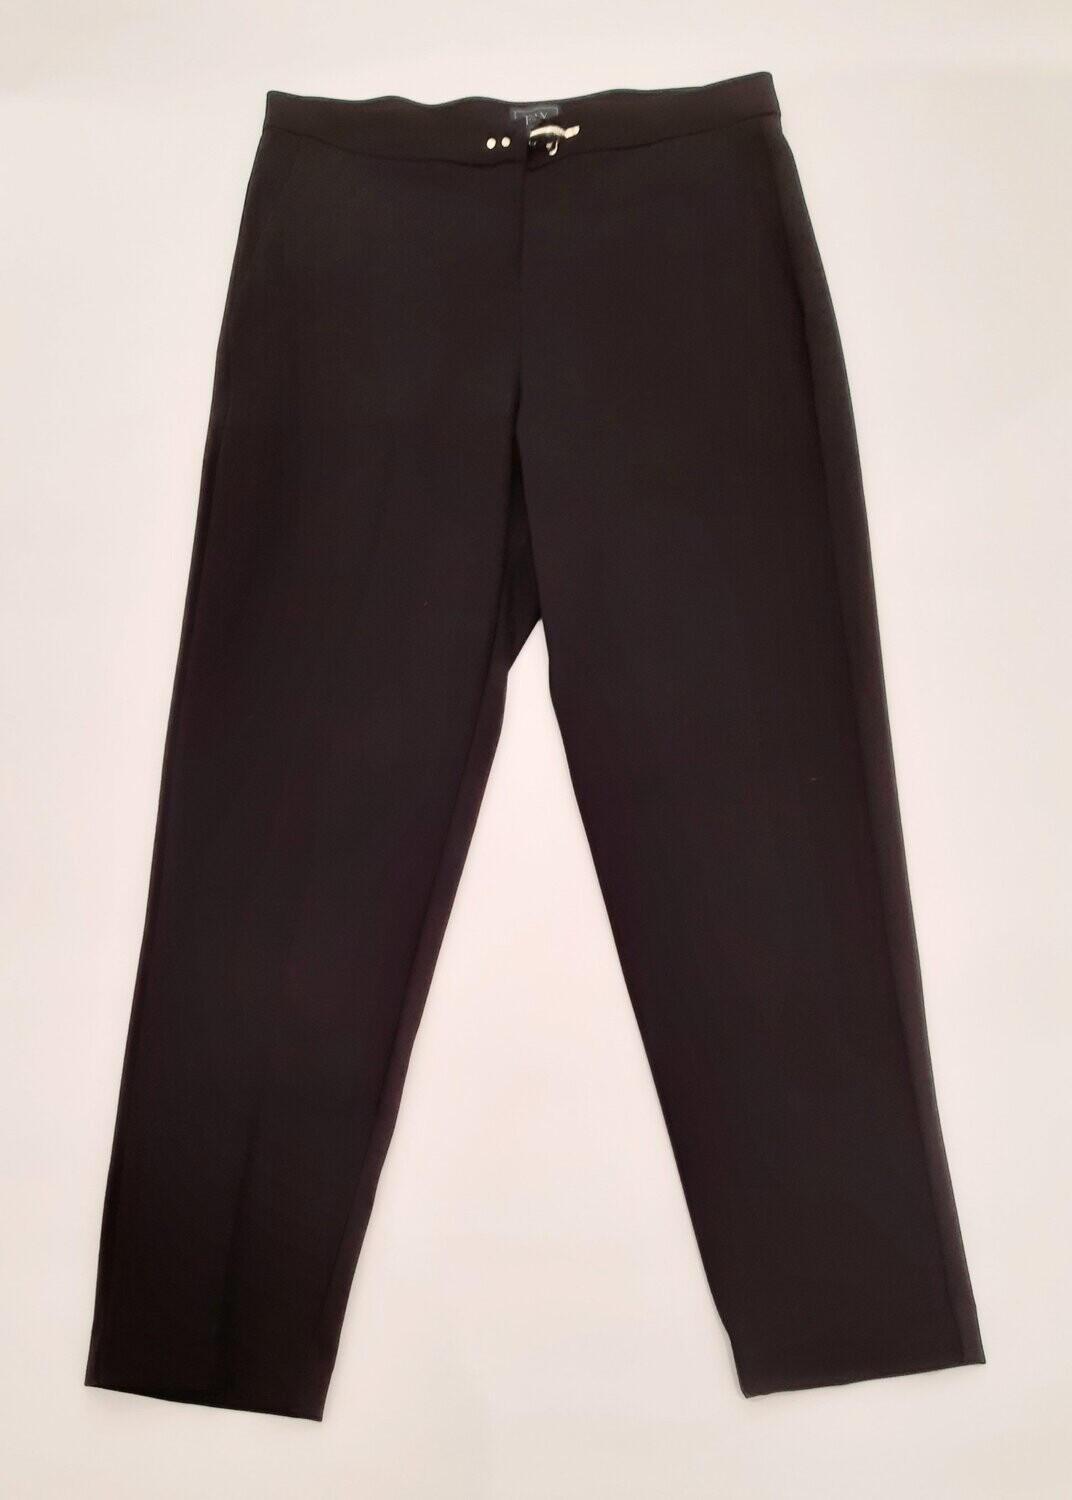 Fay-pantalone nero gancio, size: 12 anni